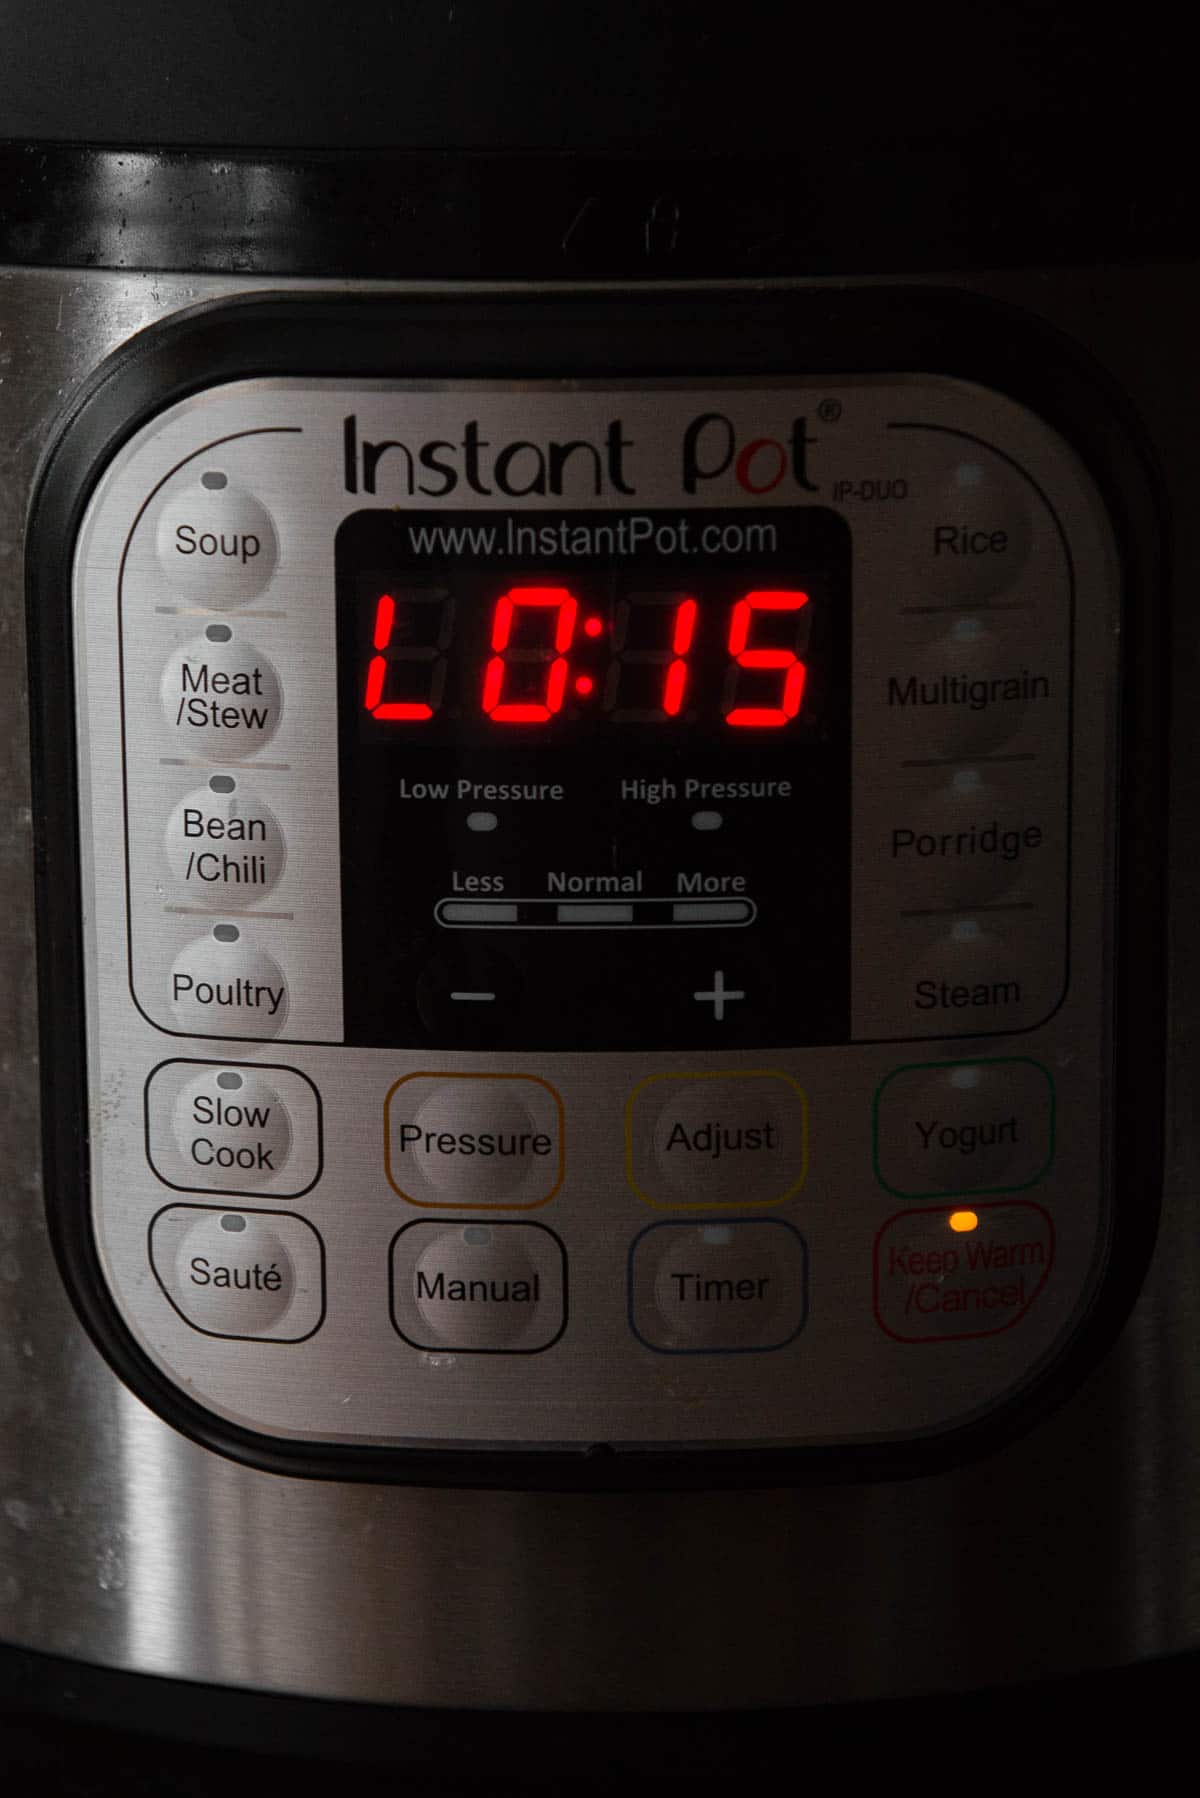 instant pot digital timer showing 15